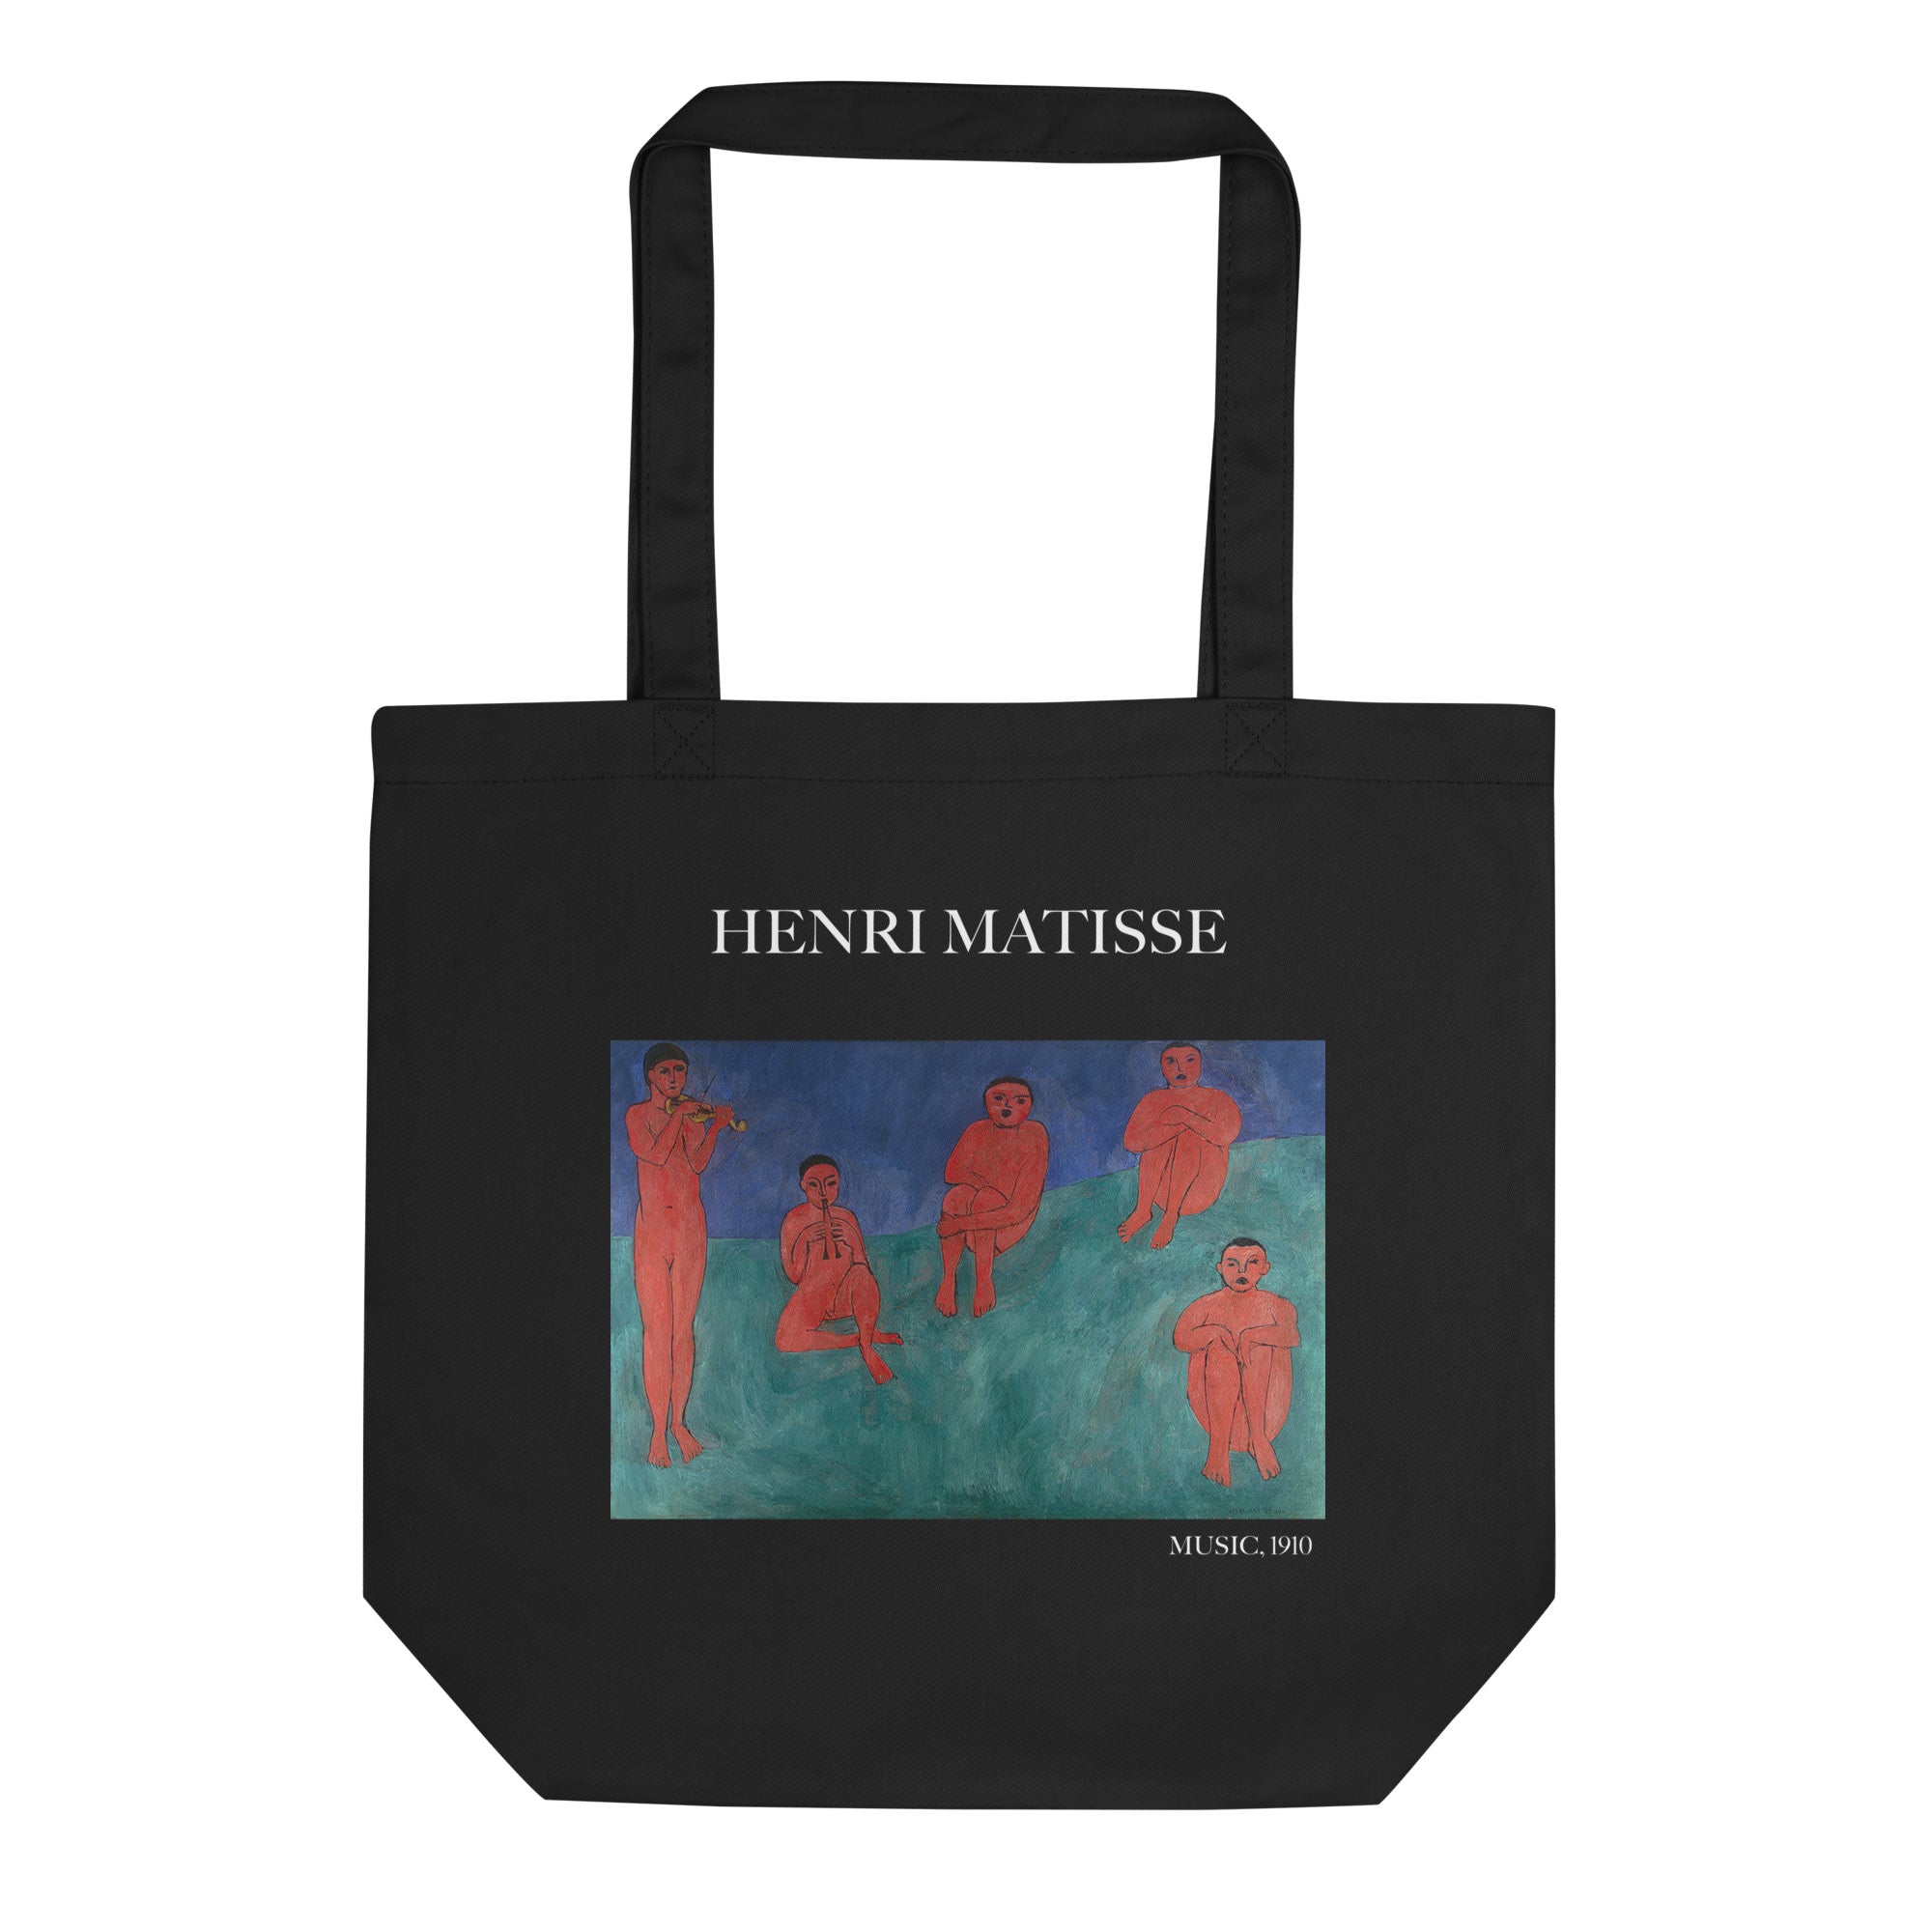 Henri Matisse 'Musik' berühmtes Gemälde Tragetasche | Umweltfreundliche Kunst Tragetasche